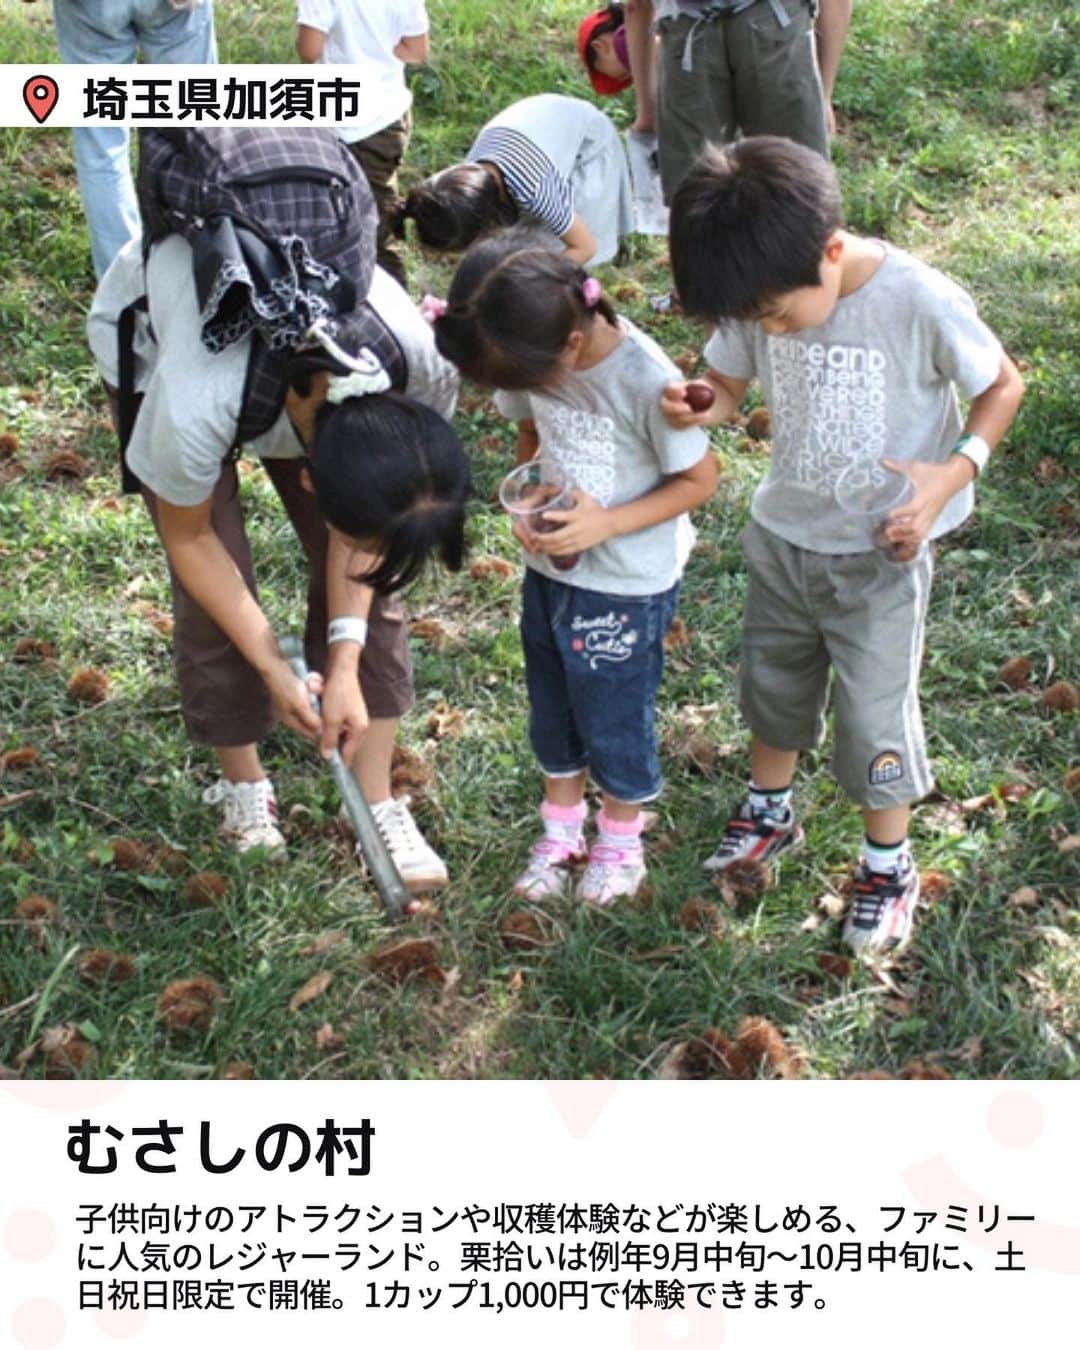 iko-yo（いこーよオフィシャル）さんのインスタグラム写真 - (iko-yo（いこーよオフィシャル）Instagram)「今回ピックアップしたのは「親子で味覚狩り！東京近郊おすすめ栗拾いスポット4選」 @ikoyo_odekakeに他の投稿も！ ーーーーーーーーーーーーーーーーーー 📍 埼玉県加須市 【むさしの村】 #むさしの村 @musashinomura1700 子供向けのアトラクションや収穫体験などが楽しめる、ファミリーに人気のレジャーランド。東北自動車道・加須ICから車で約20分の場所にあります。 栗拾いは例年9月中旬〜10月中旬に、土日祝日限定で開催。1カップ（約500〜600g）1,000円で体験できます（入園料は別途必要、中学生以上1200円、3歳以上650円）。受付は当日ファミリー館のフロントにて、9:30より開始。定員数が埋まり次第受付を終了してしまうため、早めにでかけるのがおすすめです。  📍 埼玉県所沢市 【田中ぶどう園】 #田中ぶどう園 関越自動車道・所沢ICから車で約20分。都内から気軽にアクセスできる家族経営の観光農園です。ぶどう園という名称ですが、栗拾いも楽しめます。 栗拾いは例年9月中旬〜10月中旬頃、土日祝日限定で開催。栗園はぶどう園の奥にあり、最盛期には大粒の栗の実がたくさん落ちています。栗拾いもぶどう狩りも収穫した量に応じて支払う重量制で、栗は100g100円、ぶどうは100g80円〜（品種による）。また、別途入園料（中学生以上500円、3歳〜小学生400円／栗園・ぶどう園共通）が必要です。 軍手やトングの貸し出しはないので、どちらかを持参しましょう。 ※2023年度は上記より値上げ予定  📍 千葉県成田市 【成田ゆめ牧場】 #成田ゆめ牧場 @yumebokujo アクセスは東関東自動車道の下総ICから車で約2分。栗拾い体験は、例年9月中旬〜10月中旬頃に実施。収穫できるのは1グループ500gまで。参加費用は900円です。別途、牧場の入場料が必要になります（中学生以上1,900円、4歳〜小学生1,000円、シニア1,700円）。 WEBでの事前予約が必須で、料金も事前支払いが必要です。開催時間は日によって異なるので、予約時にサイトで確認しましょう。授乳室は園内に3カ所あります。ベビーカーの貸し出し（１台400円）も行っており、赤ちゃん連れでも安心して楽しめますよ。  📍神奈川県相模原市 【藤野園芸ランド】 #藤野園芸ランド 神奈川県相模原市緑区の名倉地区に点在する農家が協力して運営している観光農園。作物が採れる時期に、各農家で収穫体験ができます。 栗拾い体験は例年9〜10月頃に行われています。でかける前に、栗を栽培している農家に連絡して予約をしましょう。入園は無料で、収穫した作物の分だけ料金がかかるシステムです。  ※2023年9月29日時点の情報です。 最新の情報は公式HPや「いこーよ」サイトでご確認ください。 ーーーーーーーーーーーーーーーーーーー おでかけ情報量は日本最大級！ 子どもとお出かけ情報サイト「いこーよ」 「親子でおでかけしたい場所」をご紹介させていただいています！  お子さんとのおでかけの思い出の写真を、このアカウントをフォローの上#いこーよ #いこーよおでかけ部 をつけてぜひ投稿してください。魅力的な写真は、いこーよ公式SNSで紹介させていただきます！  募集中タグ#いこーよ #いこーよおでかけ部  「子どもと行きたい！」と思ったら保存が便利！ プロフィールのURLから「いこーよ」のサイトに行くと、他の投稿やオトクな情報などが載っています♪ ☞ @ikoyo_odekake  #いこーよ #お出かけ #おでかけ #お出かけスポット #子連れ #こどものいる暮らし #子連れスポット#子連れおでかけ #いこーよおでかけ部 #千葉ママ#千葉観光#神奈川ママ#神奈川観光 #埼玉ママ#埼玉観光#親子連れ#栗拾い#果物狩り#栗園#味覚狩り （編集済み）」10月12日 23時38分 - ikoyo_odekake